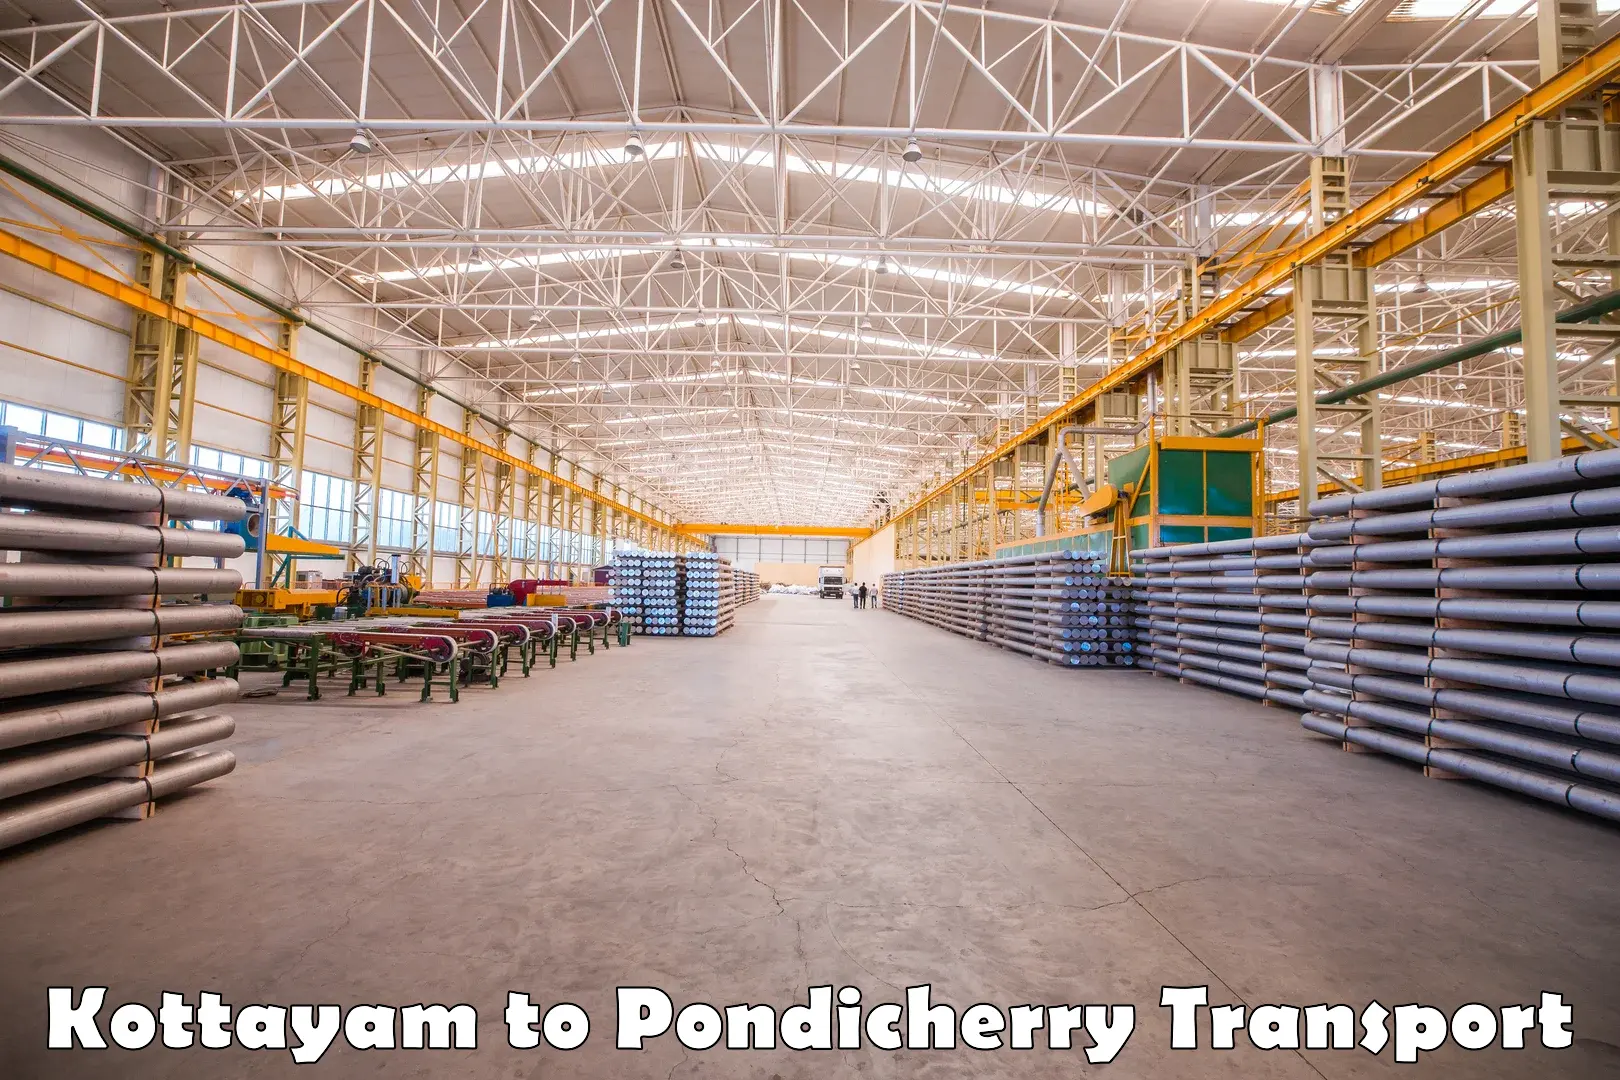 Shipping partner Kottayam to Pondicherry University